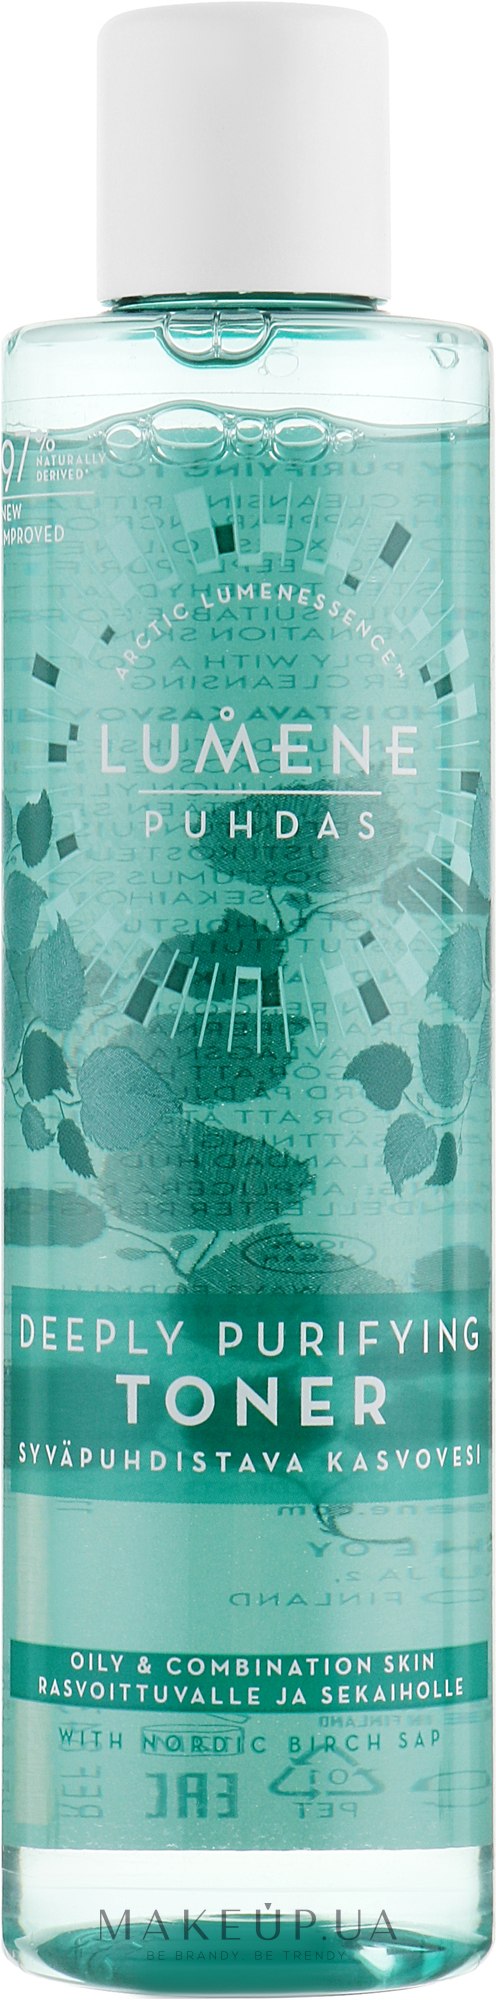 Тоник для глубокого очищения кожи - Lumene Puhdas Deeply Purifying Toner — фото 200ml